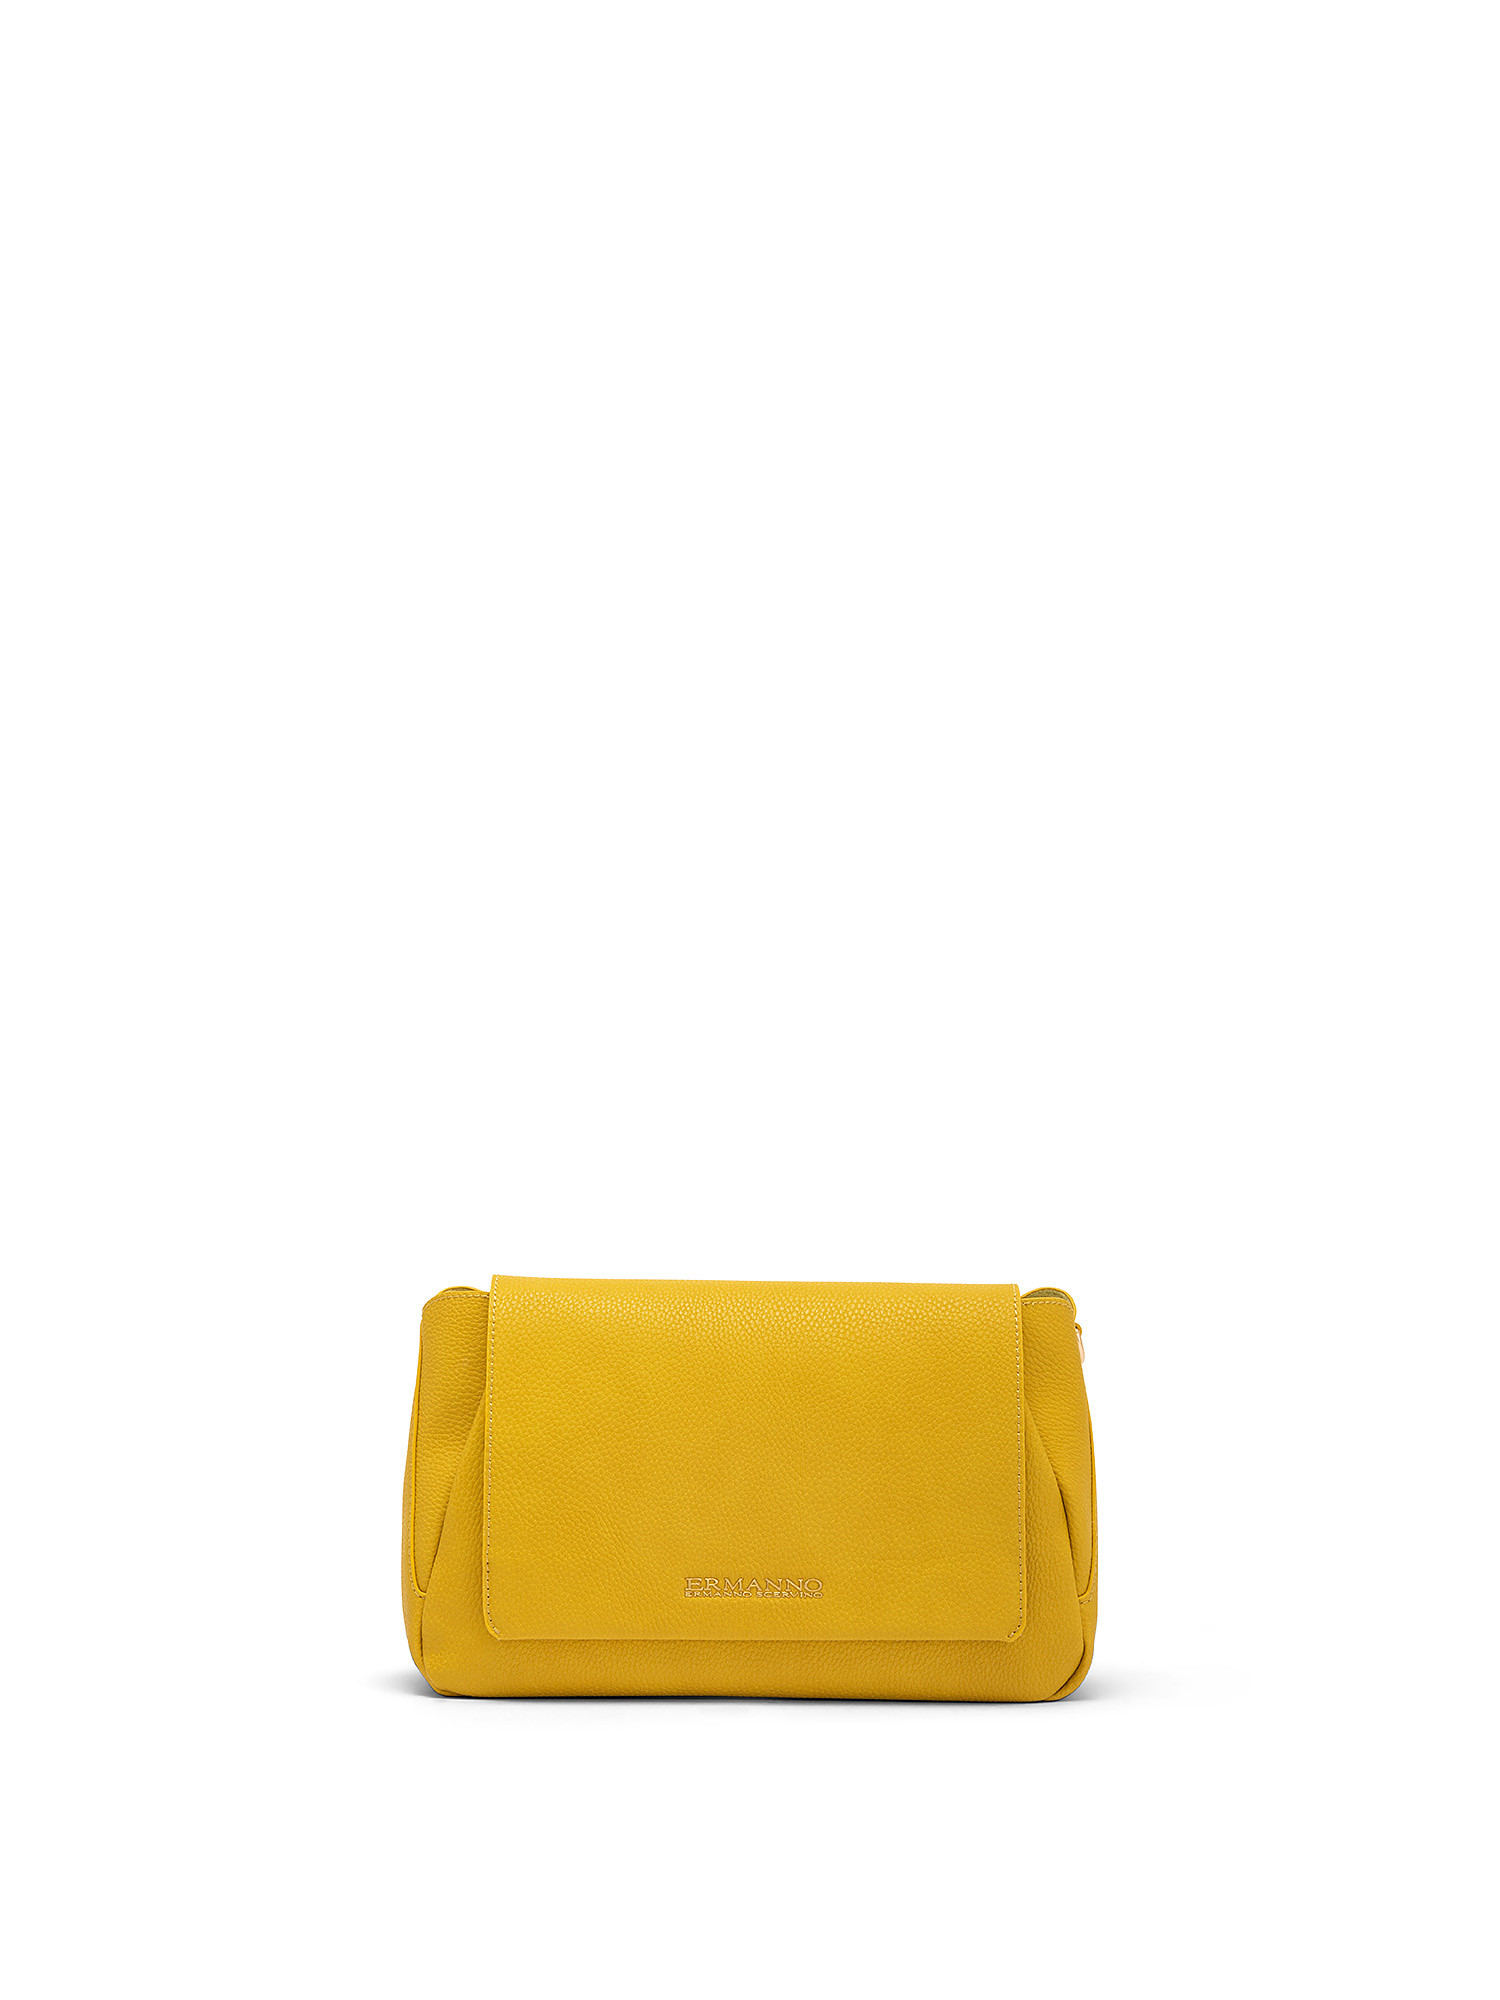 Mirella Flap Bag, Yellow, large image number 0